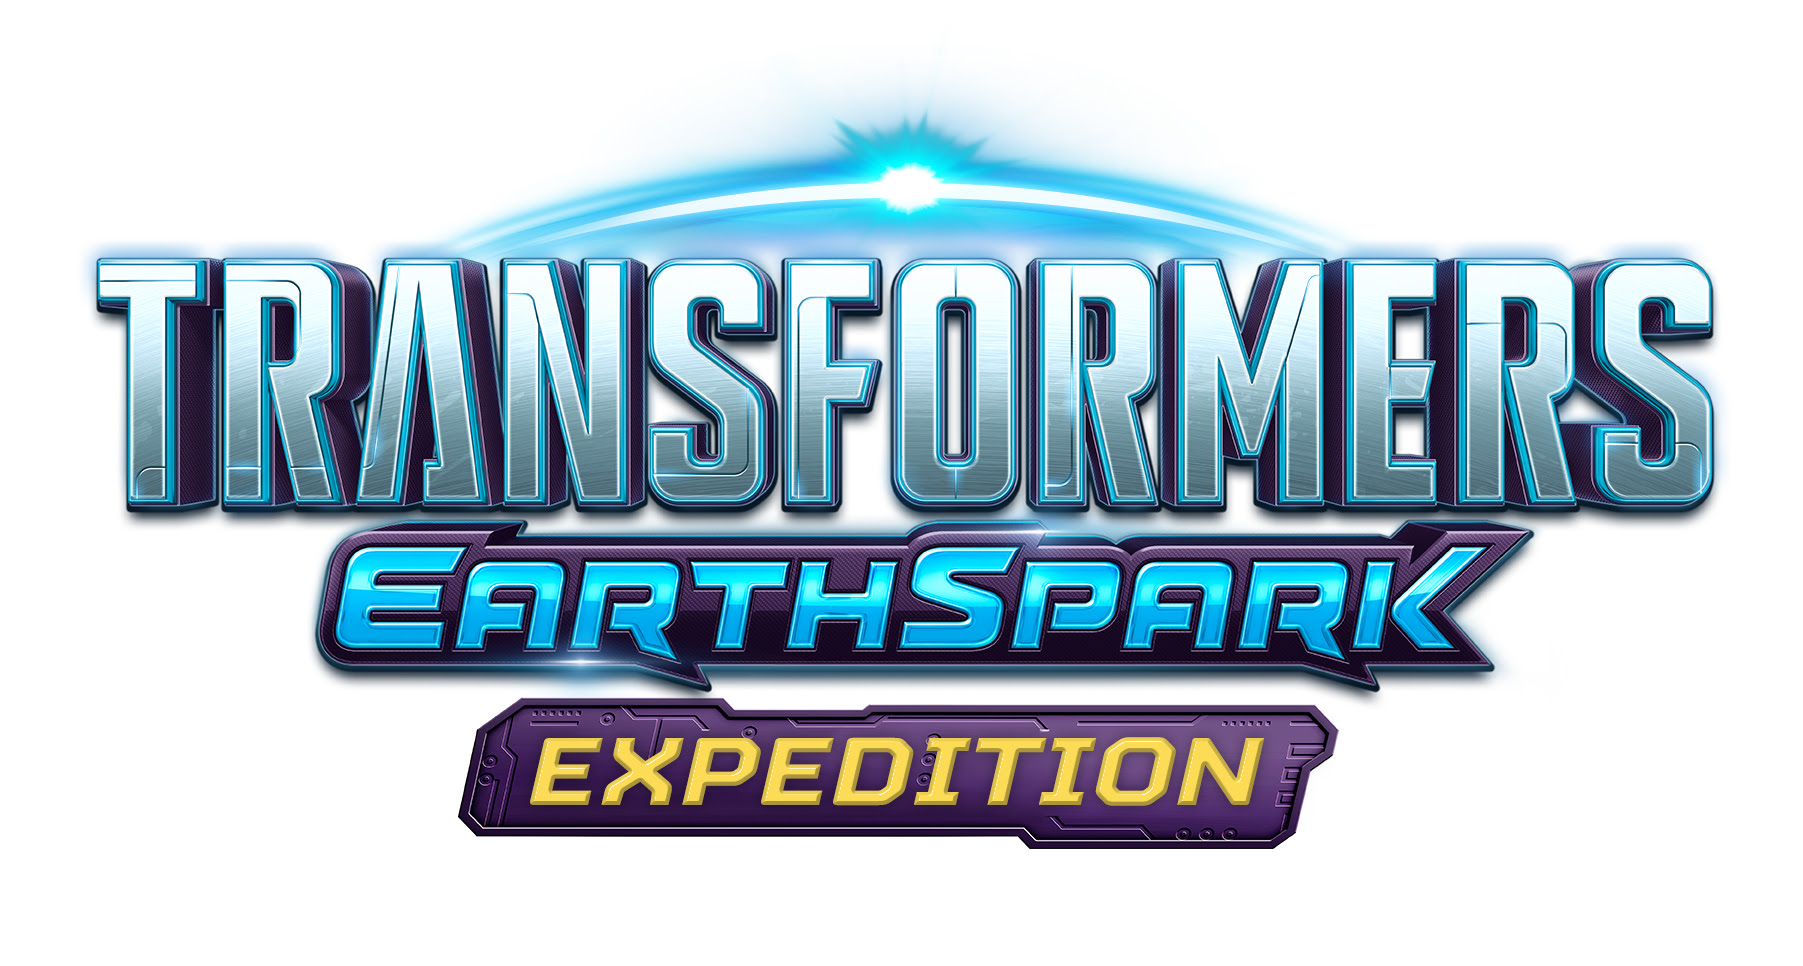 Le premier jeu vidéo TRANSFORMERS basé sur la série animée à succès « TRANSFORMERS: EARTHSPARK » est annoncé